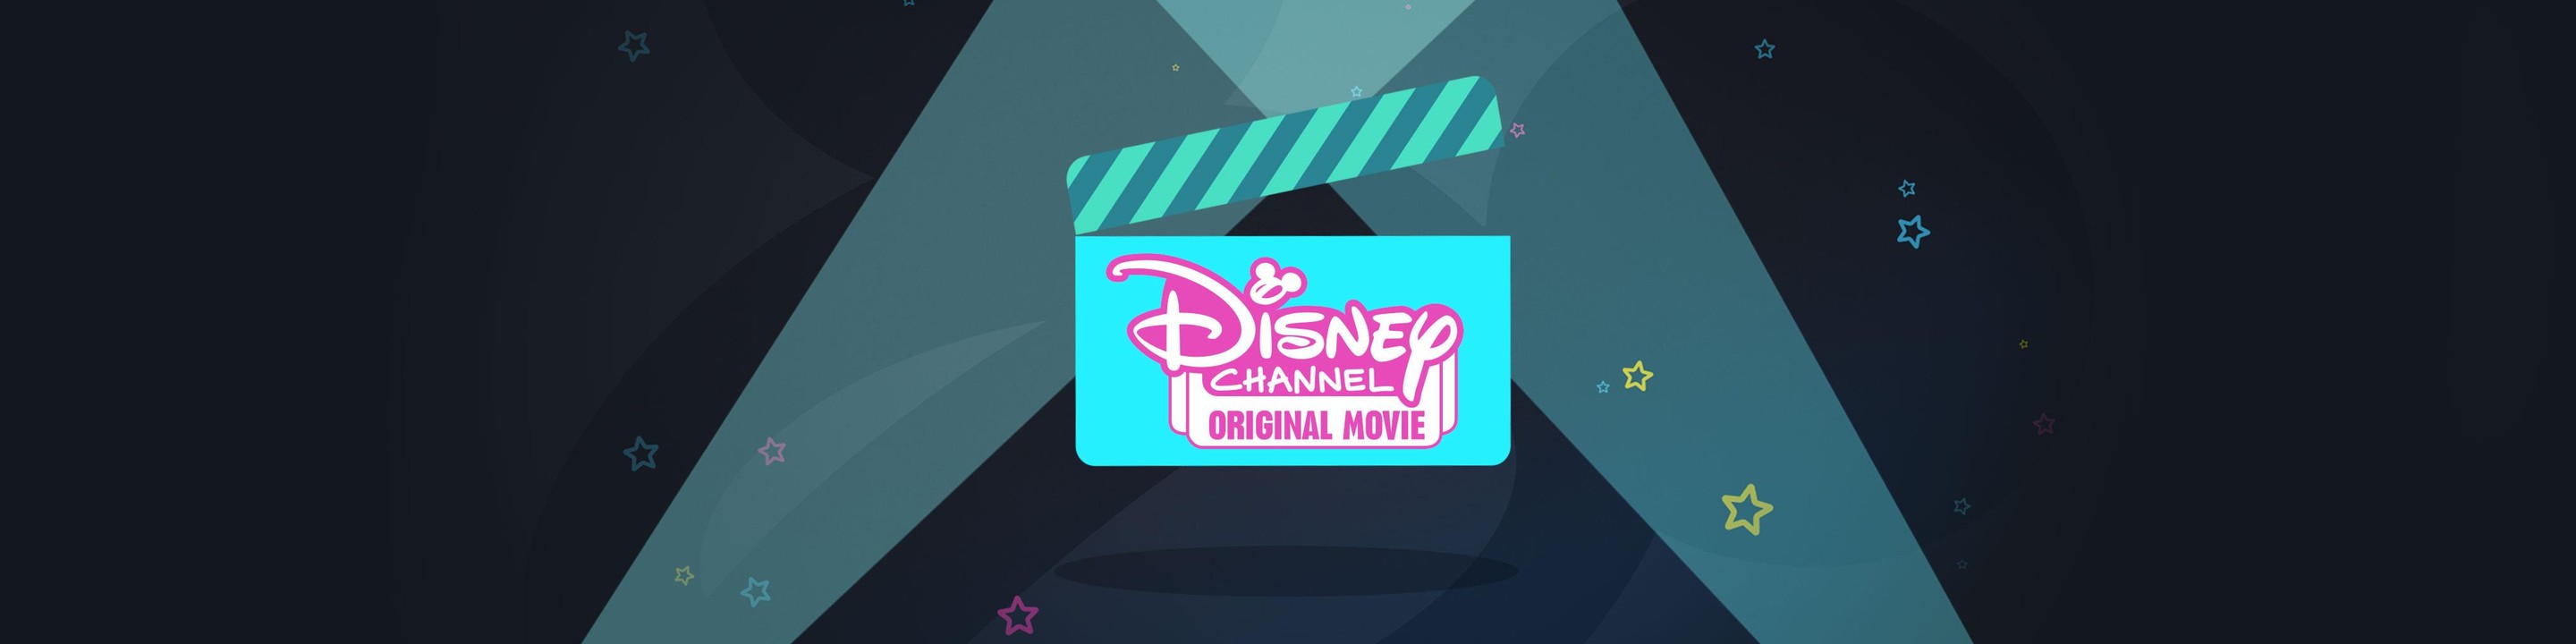 disney original movies logo